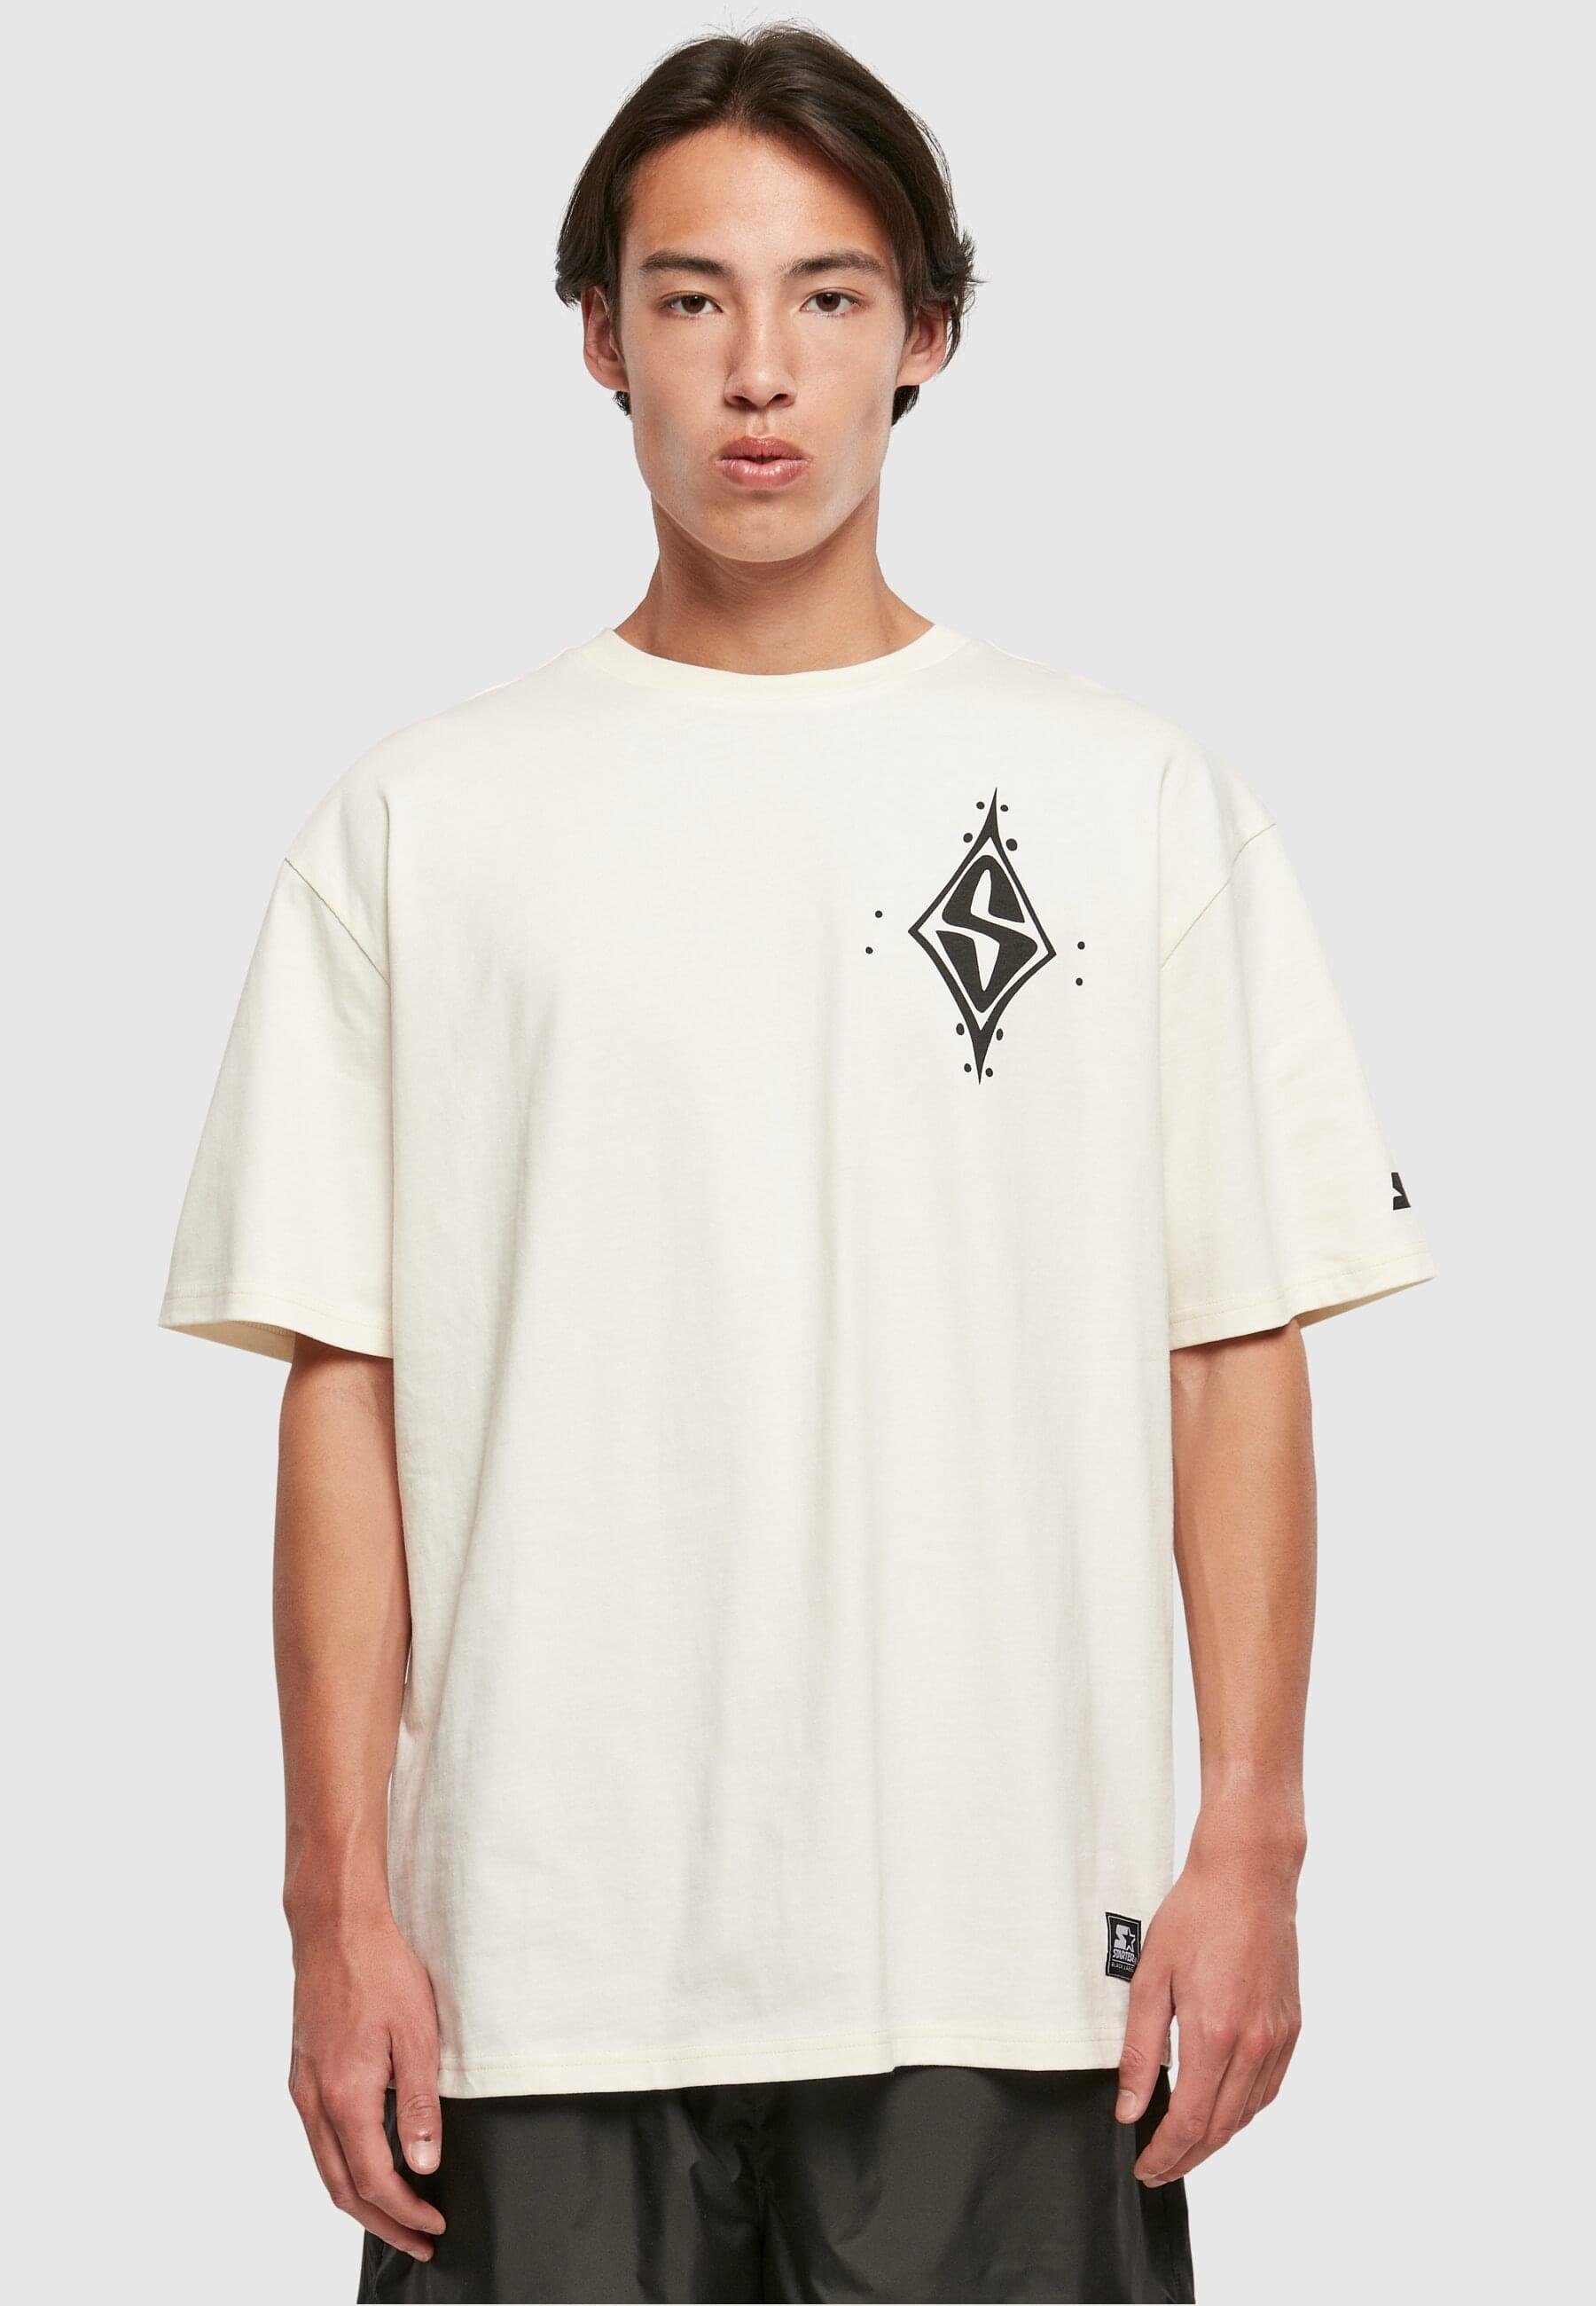 S Starter palewhite Label T-Shirt Peak Tee Black Starter Herren Oversize (1-tlg)